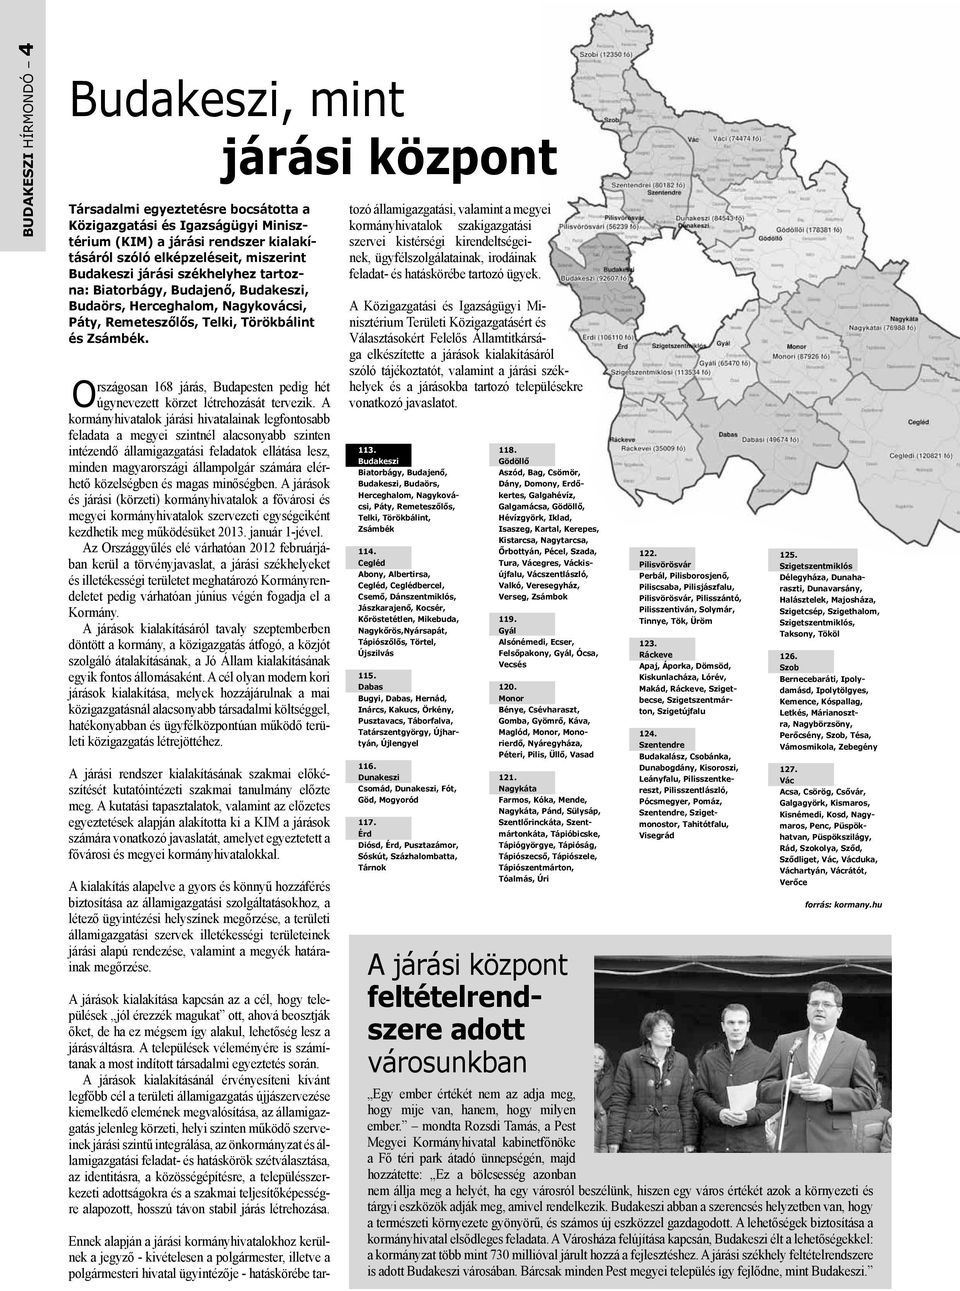 Országosan 168 járás, Budapesten pedig hét úgynevezett körzet létrehozását tervezik.